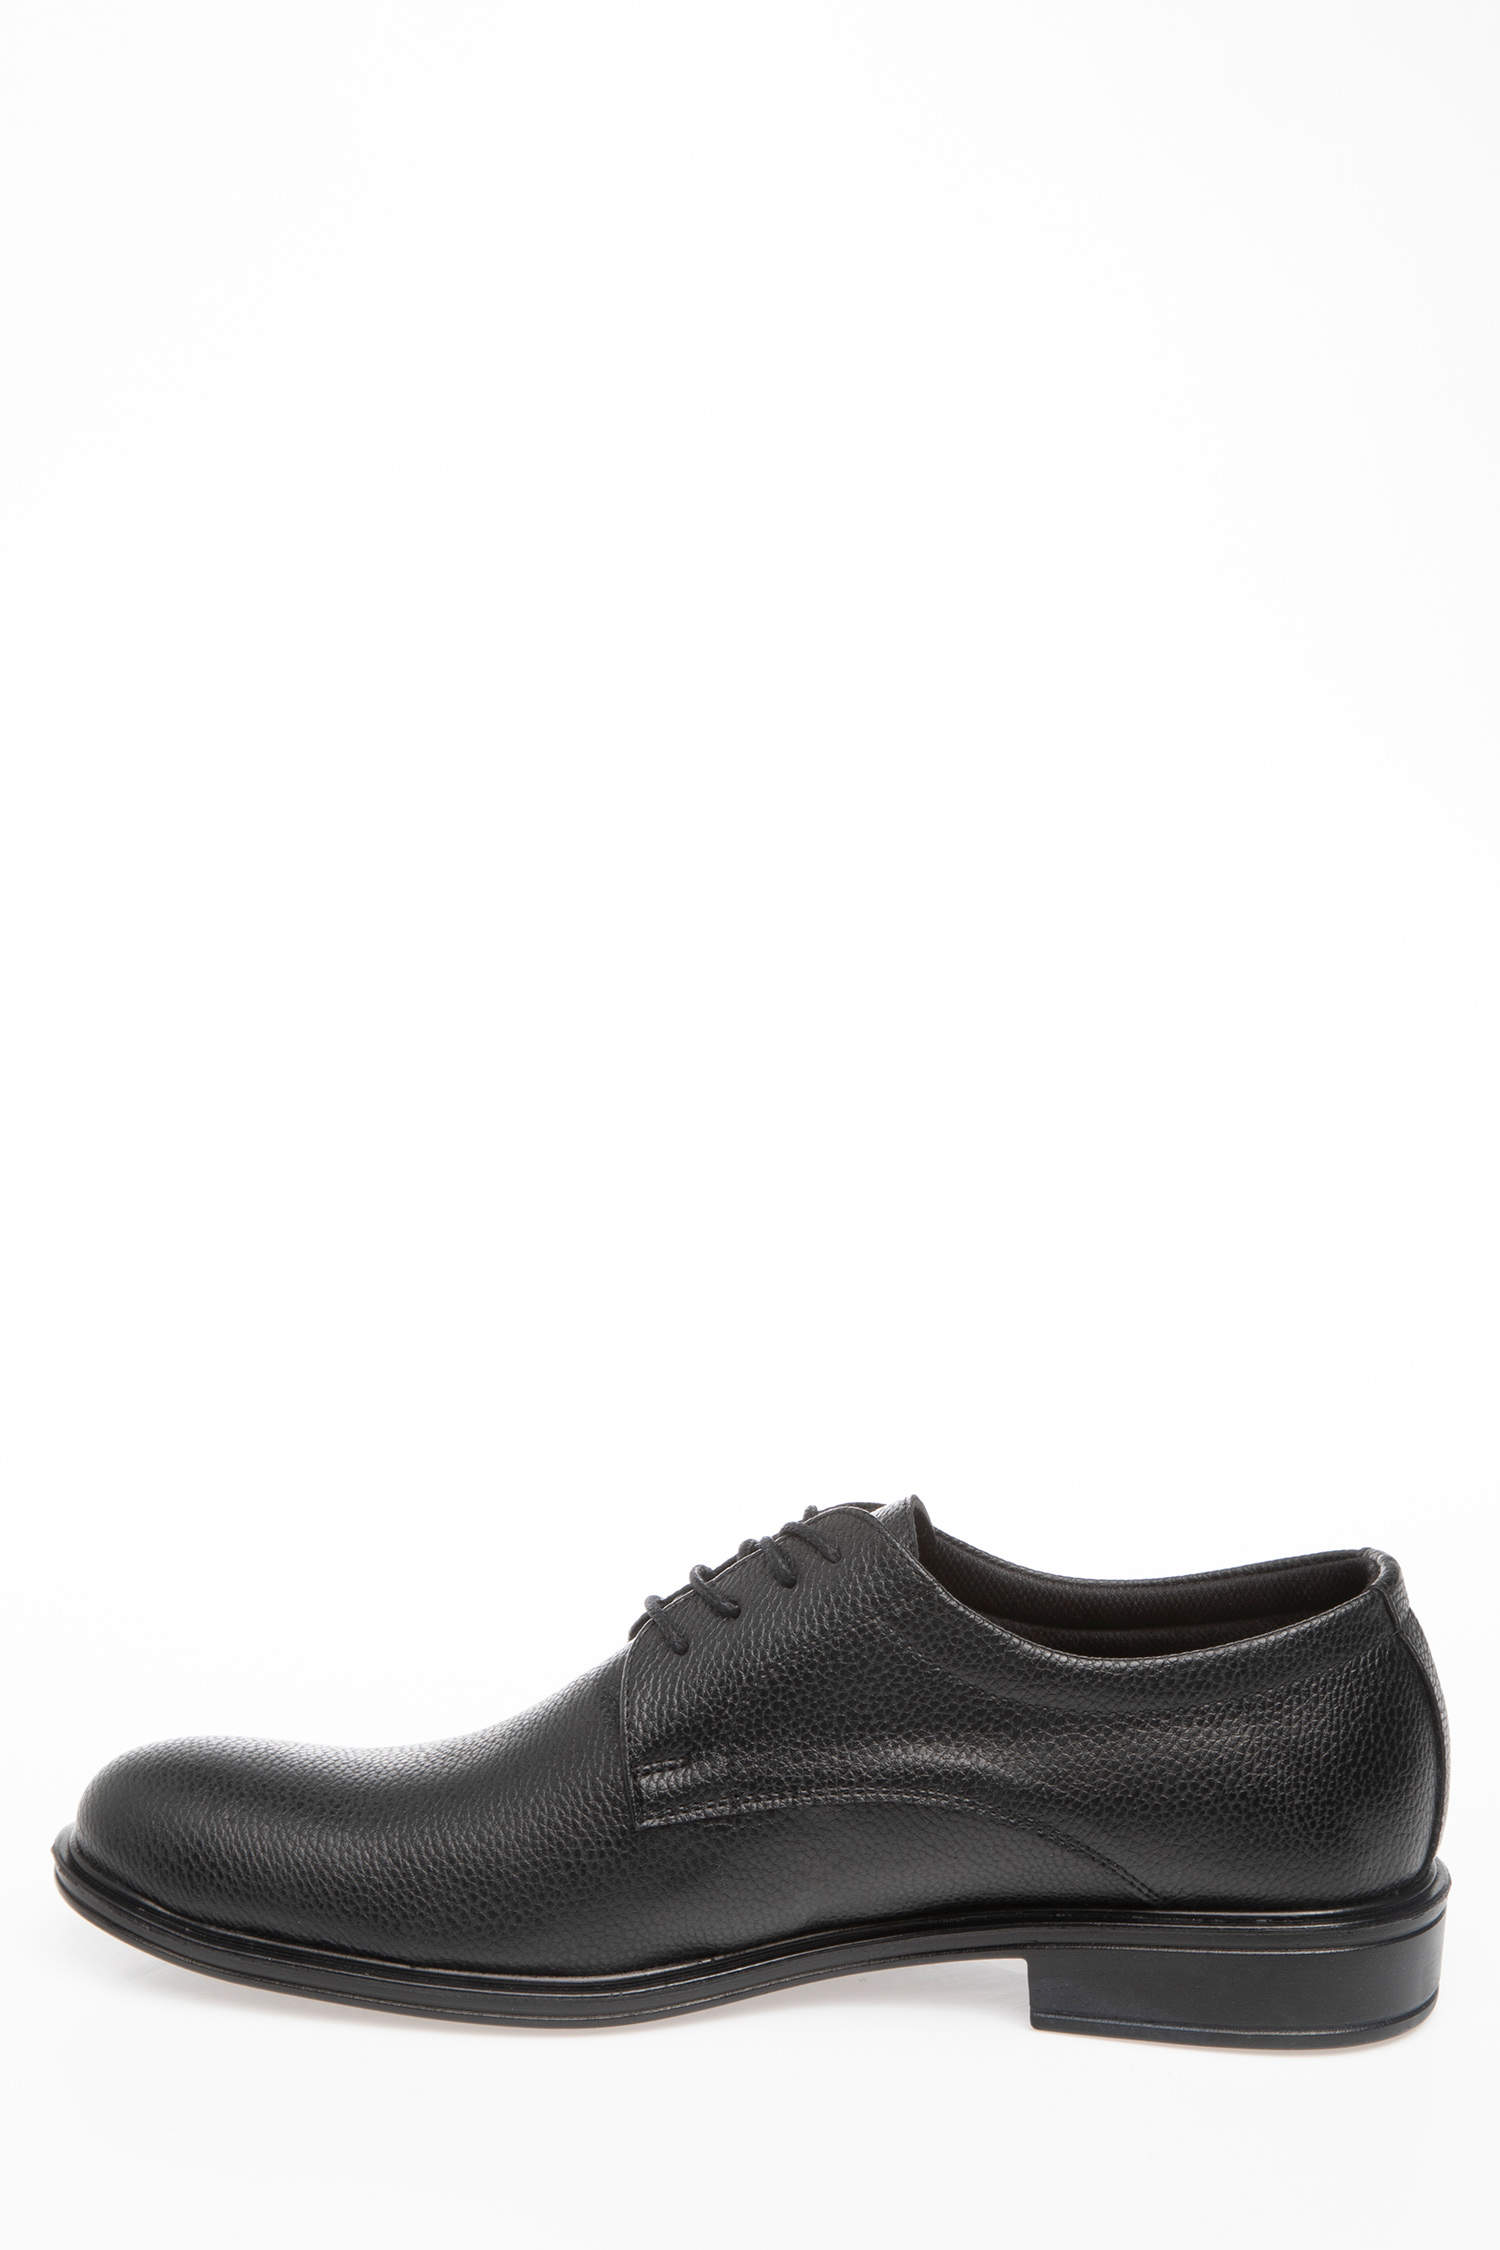 Defacto Man Shoes. 2